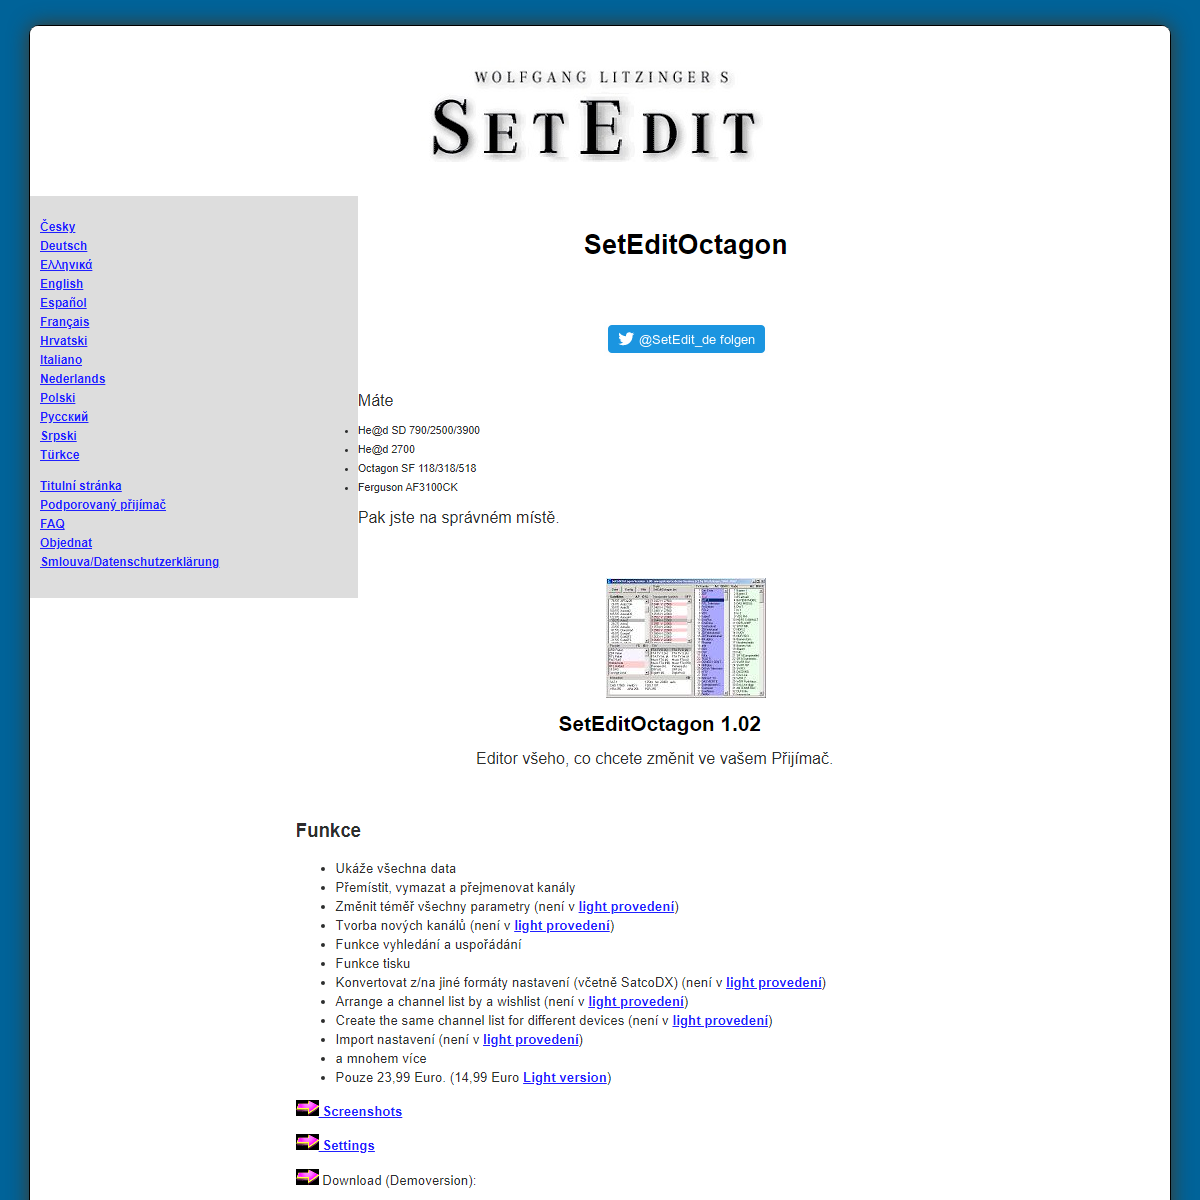 A complete backup of https://setedit.de/SetEdit.php?spr=10&Editor=76&device=Octagon